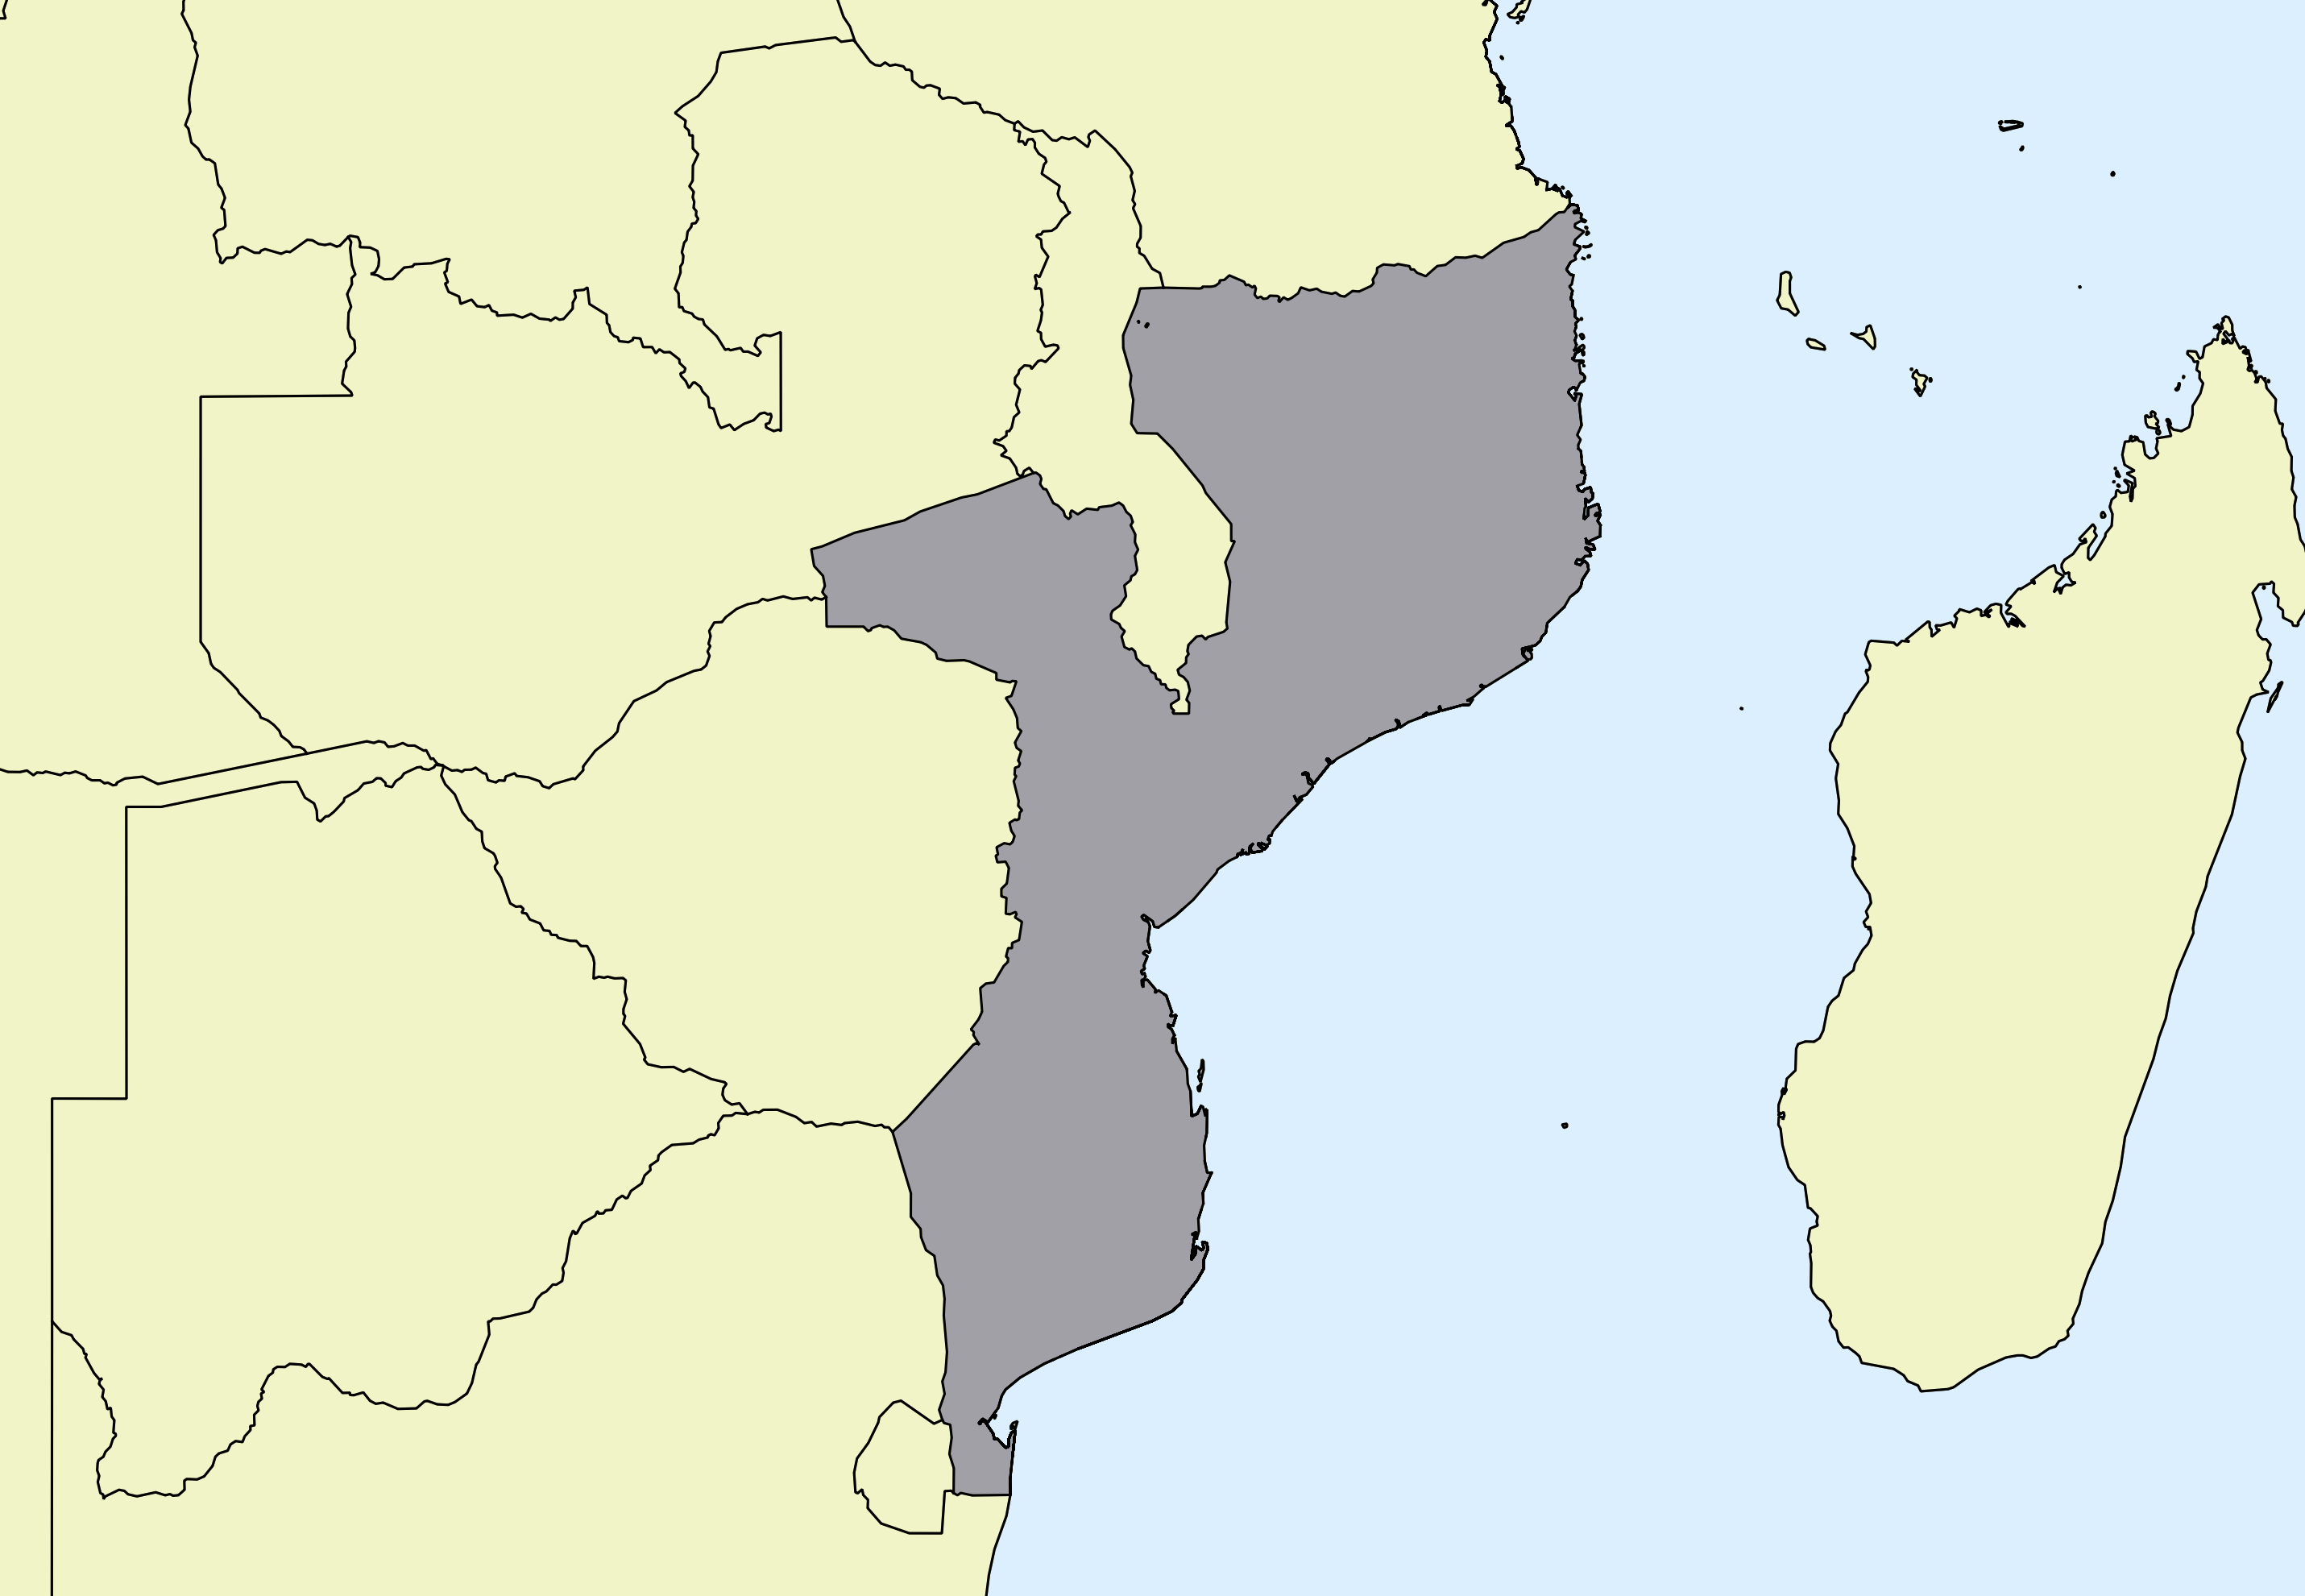 Ausschnitt einer Karte des afrikanischen Kontinents mit Ländergrenzen. Im Zentrum steht Mosambik grau hervorgehoben